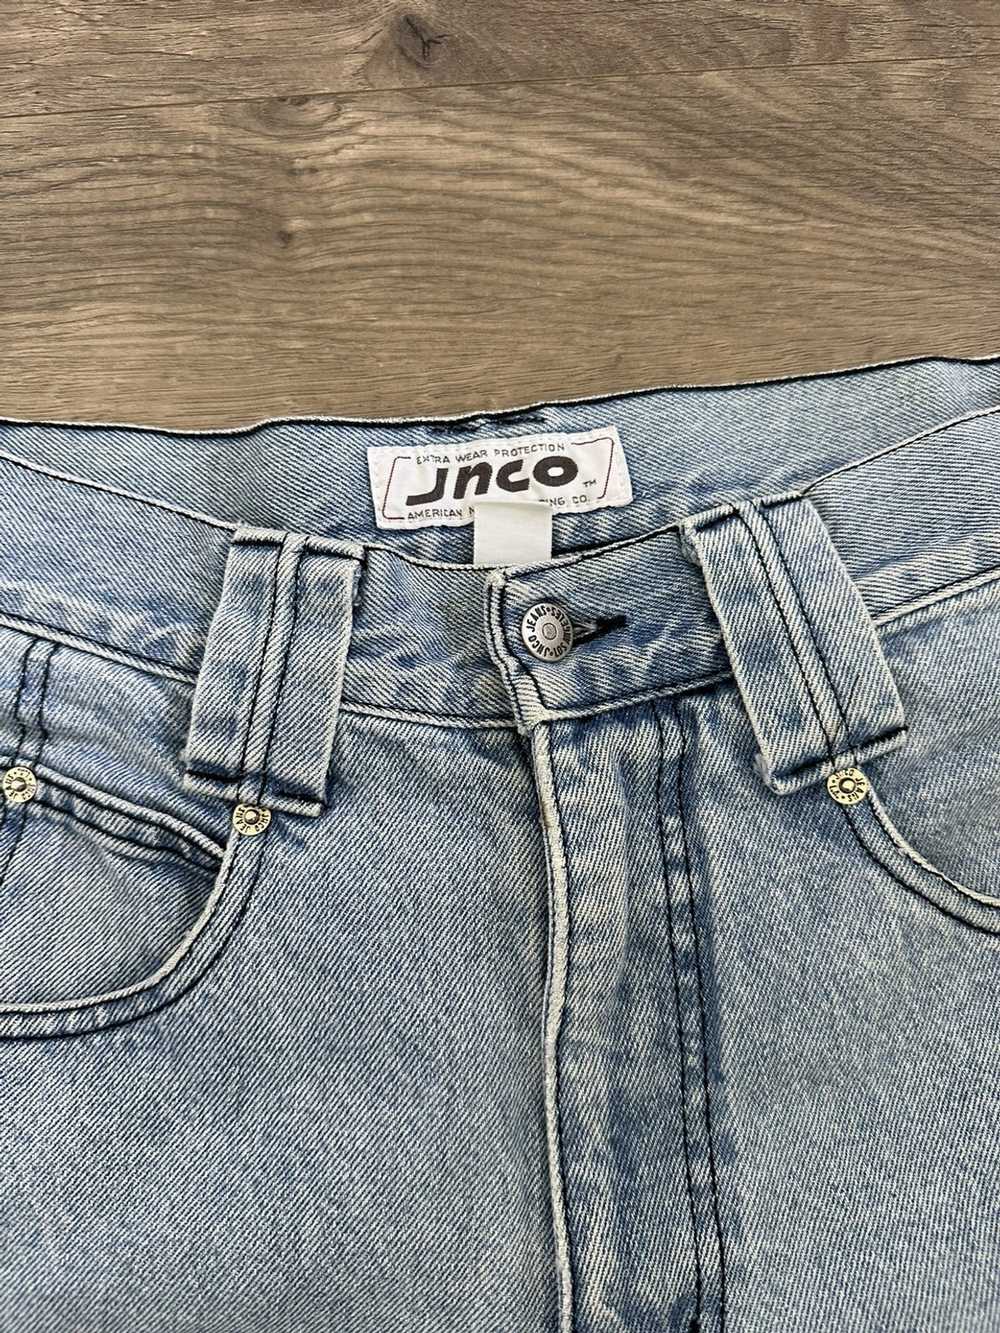 Jnco × Streetwear × Vintage Vintage jnco jeans sh… - image 5